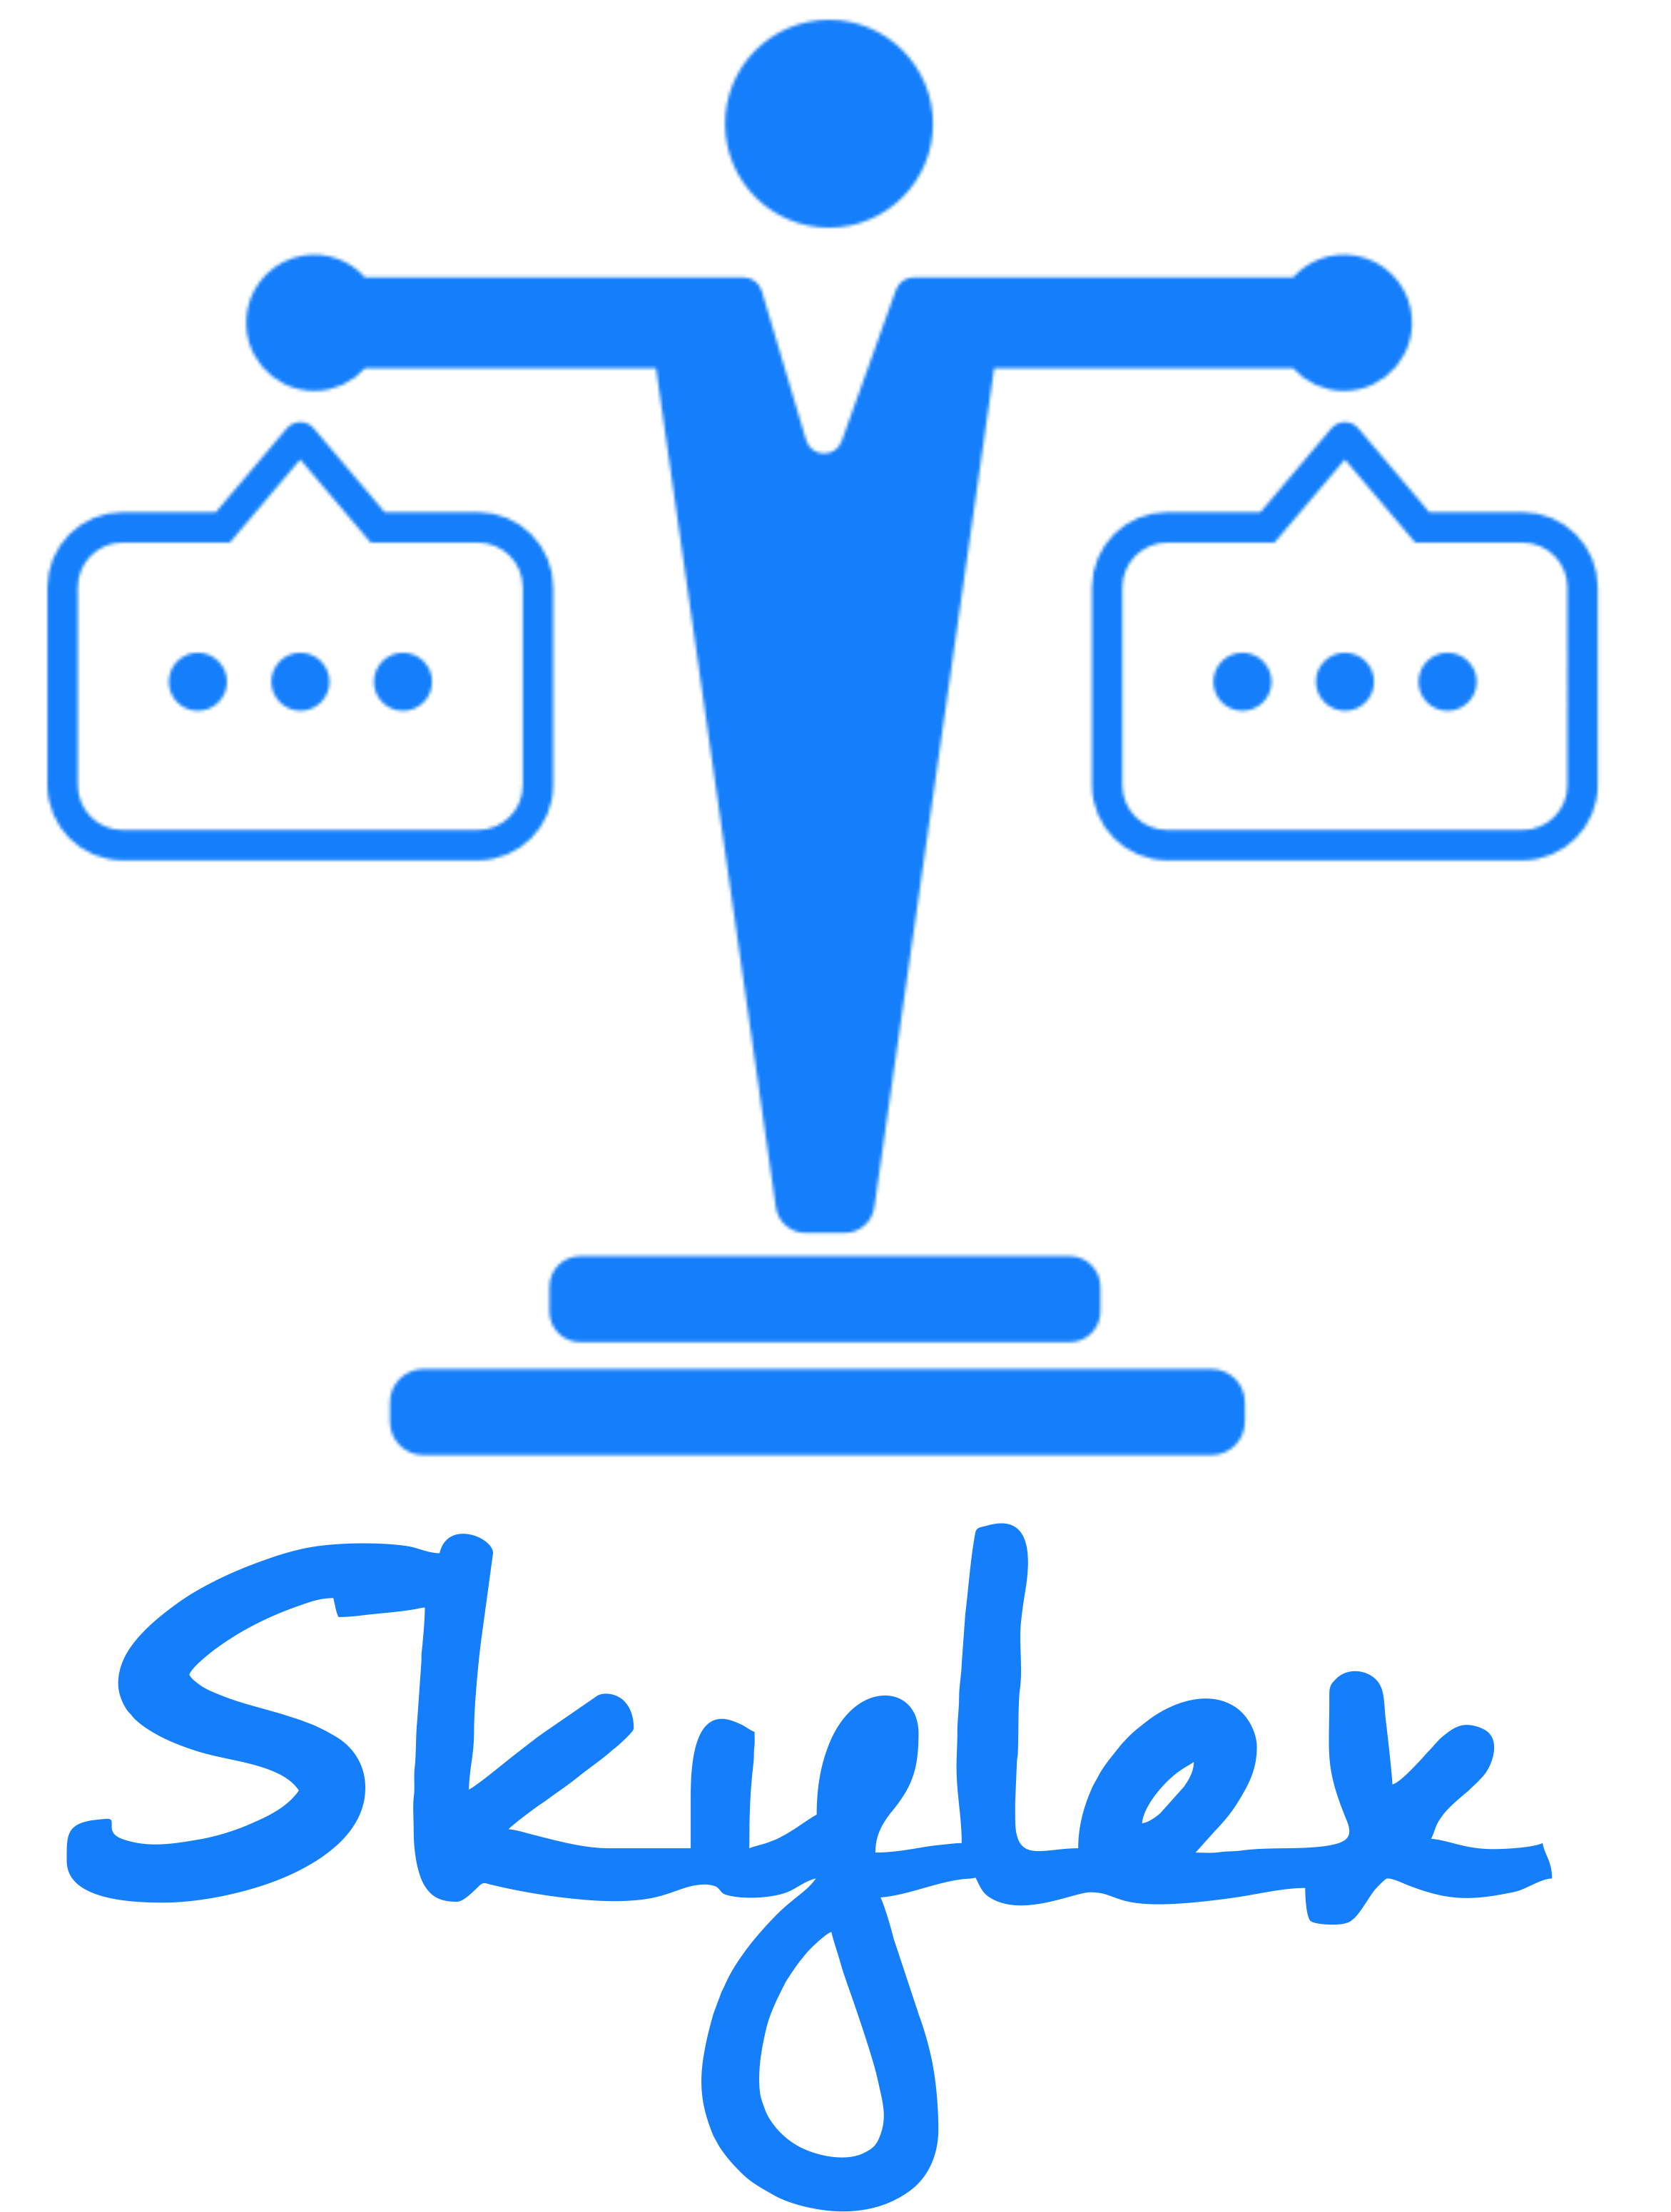 How Skylex cuts costs